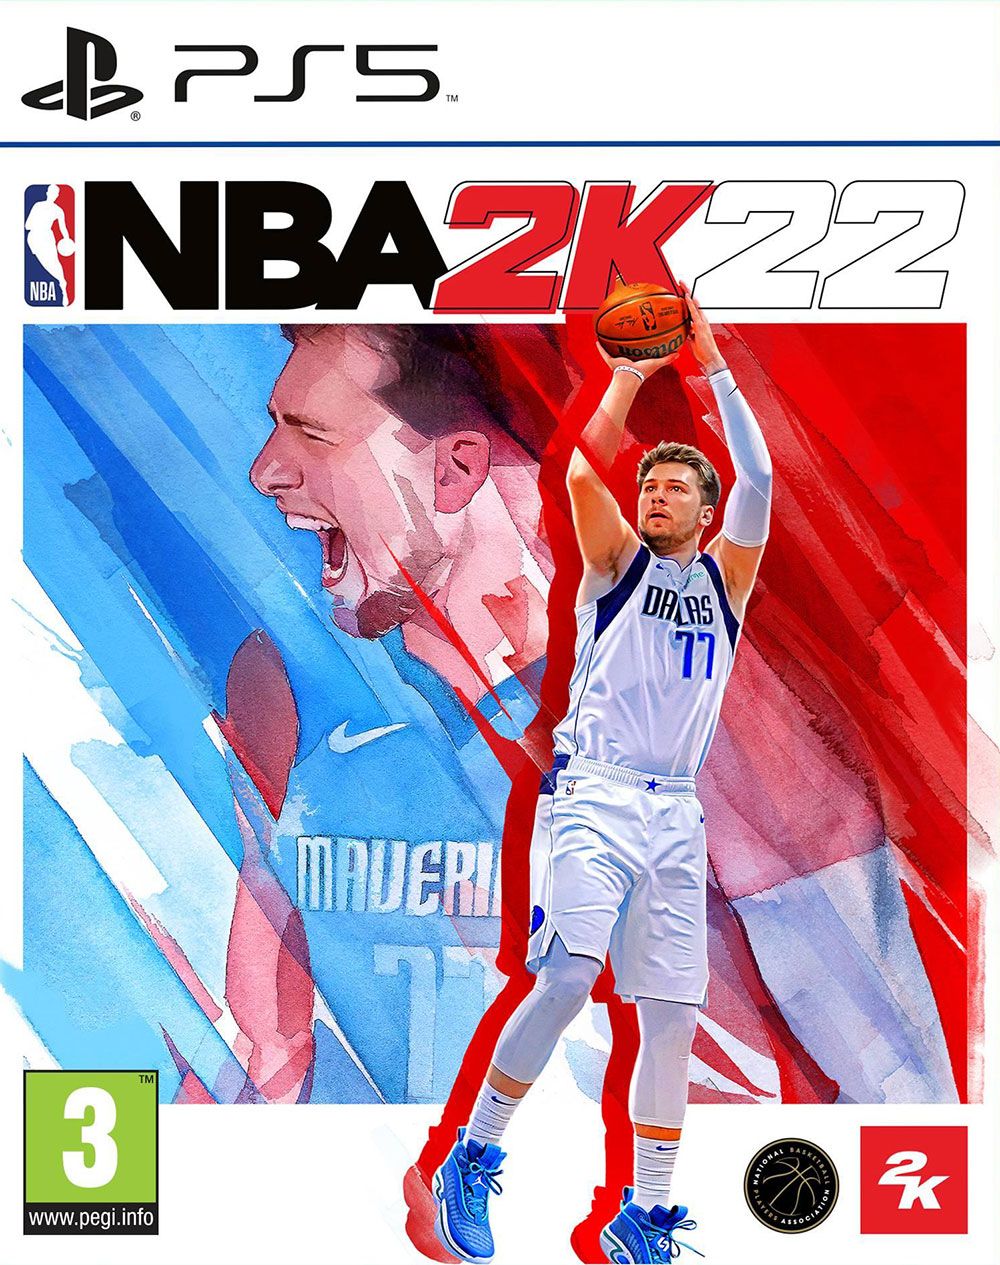 NBA 2K22 (PS5) | PlayStation 5